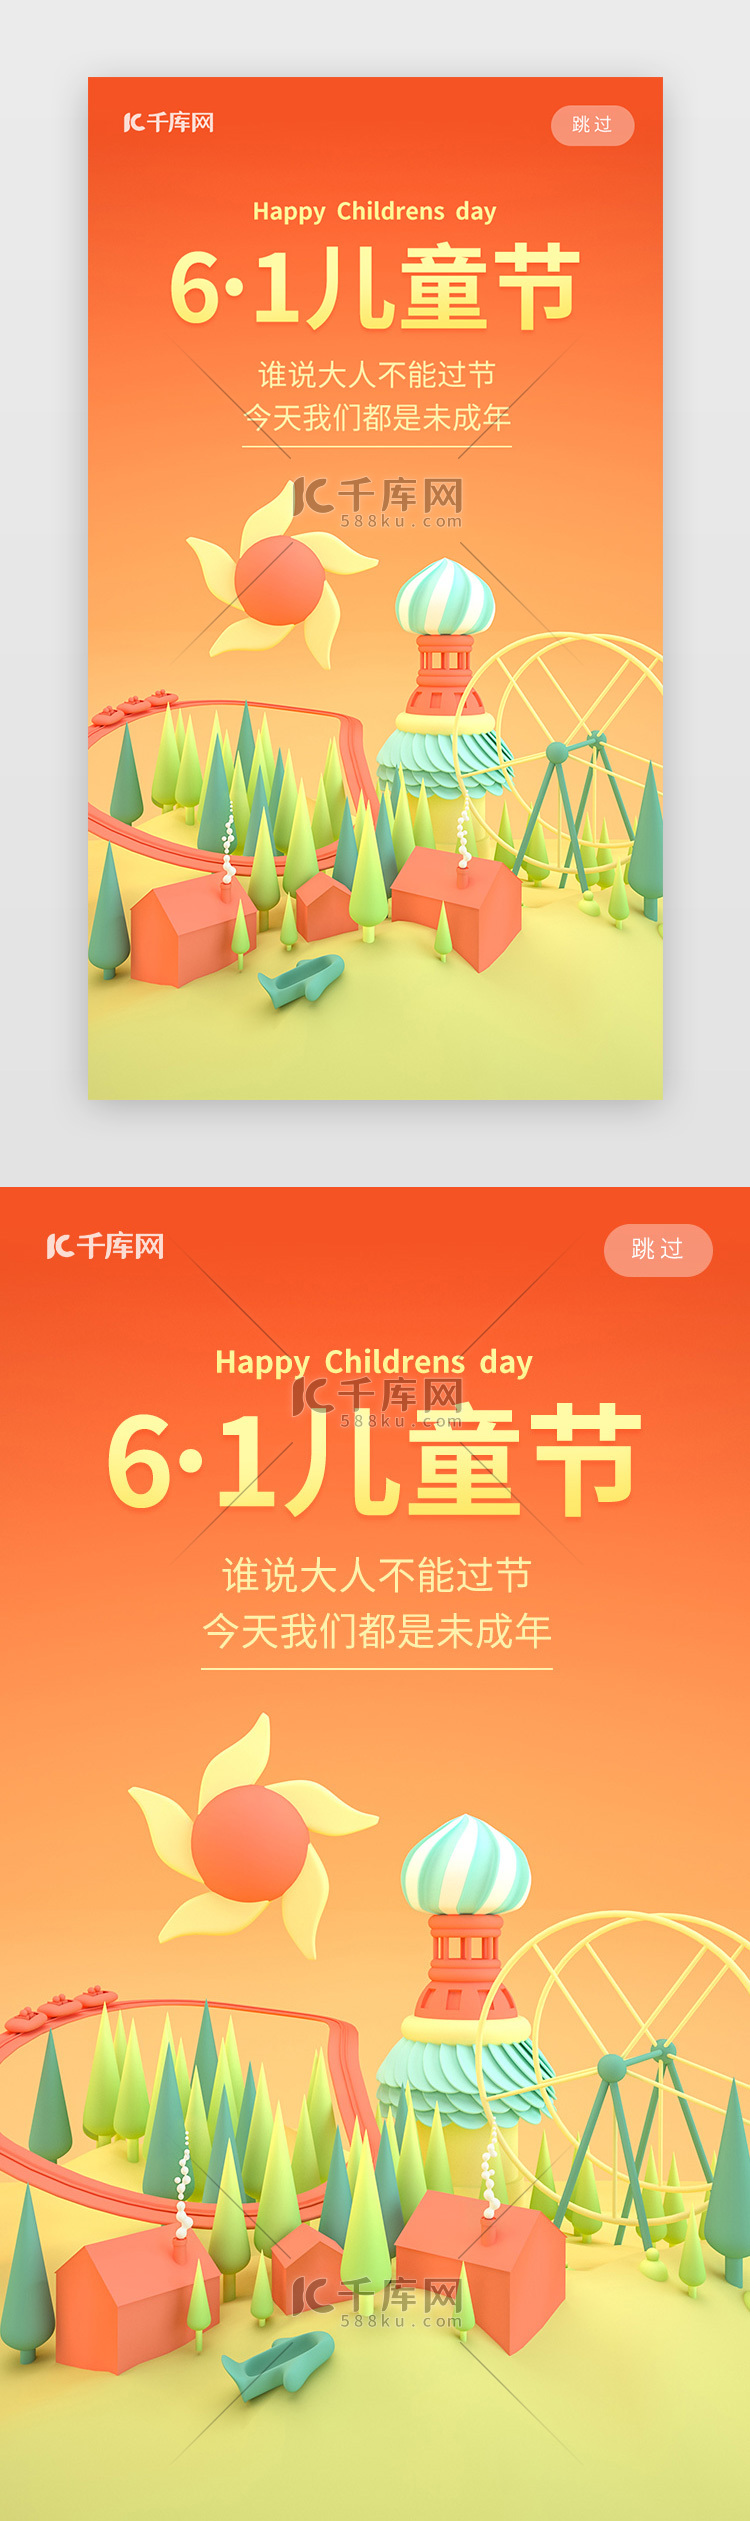 欢乐61儿童节快乐手机闪屏启动页引导